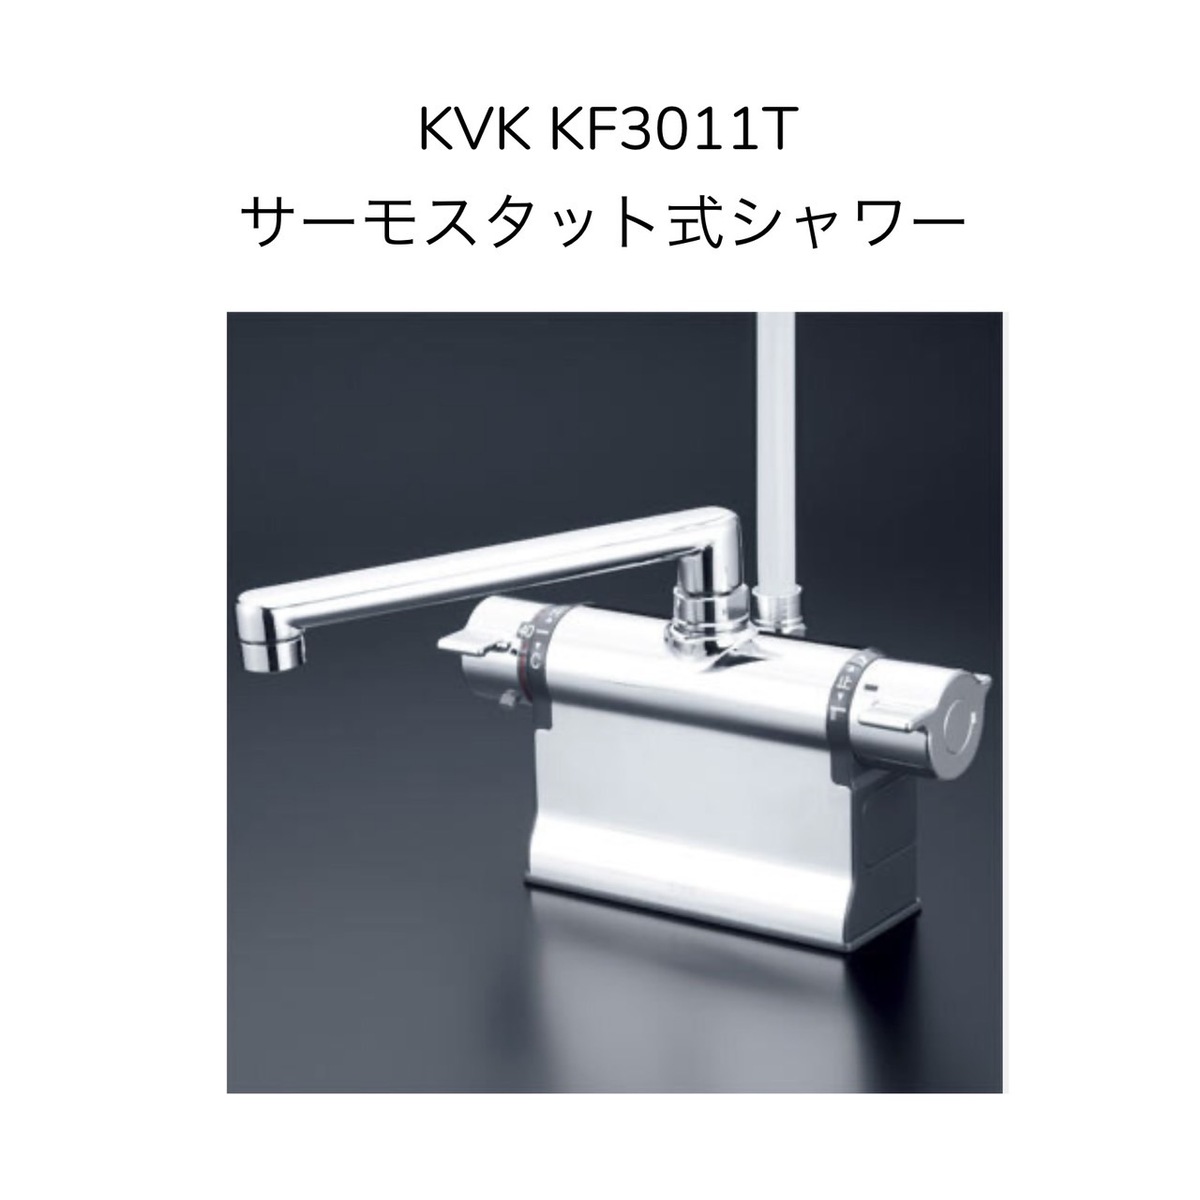 初回限定】 KVK KF207RN デッキ型一時止水付2ハンドルシャワー 右側シャワー 240mmパイプ付 取付ピッチ85mm  シャワーホース白1.45m 白ハンガー 混合水栓 湯水